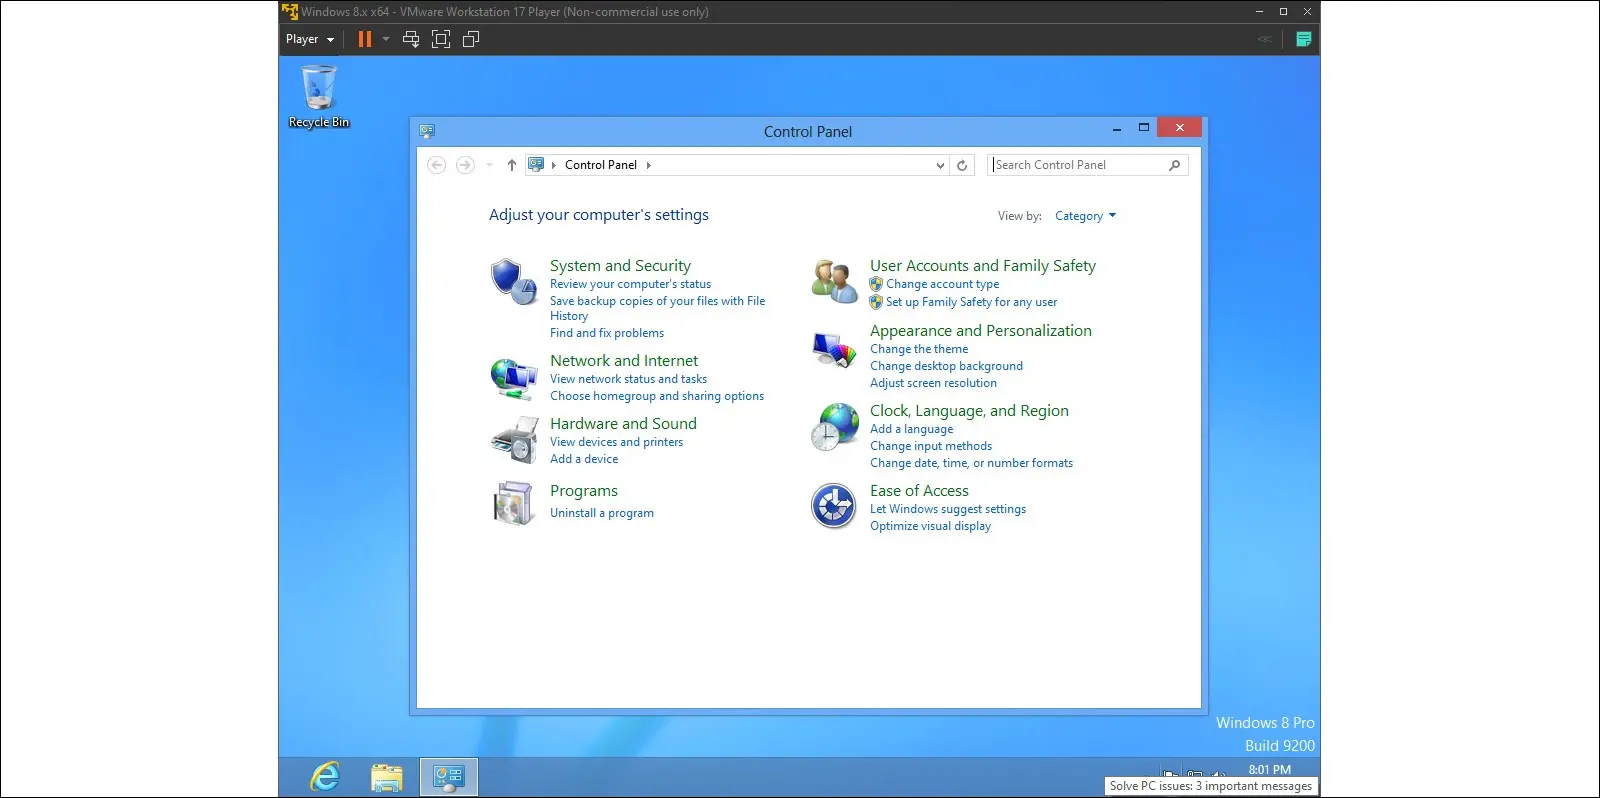 Bilder von Windows 8 auf einer virtuellen Maschine, die die Systemsteuerung zeigen